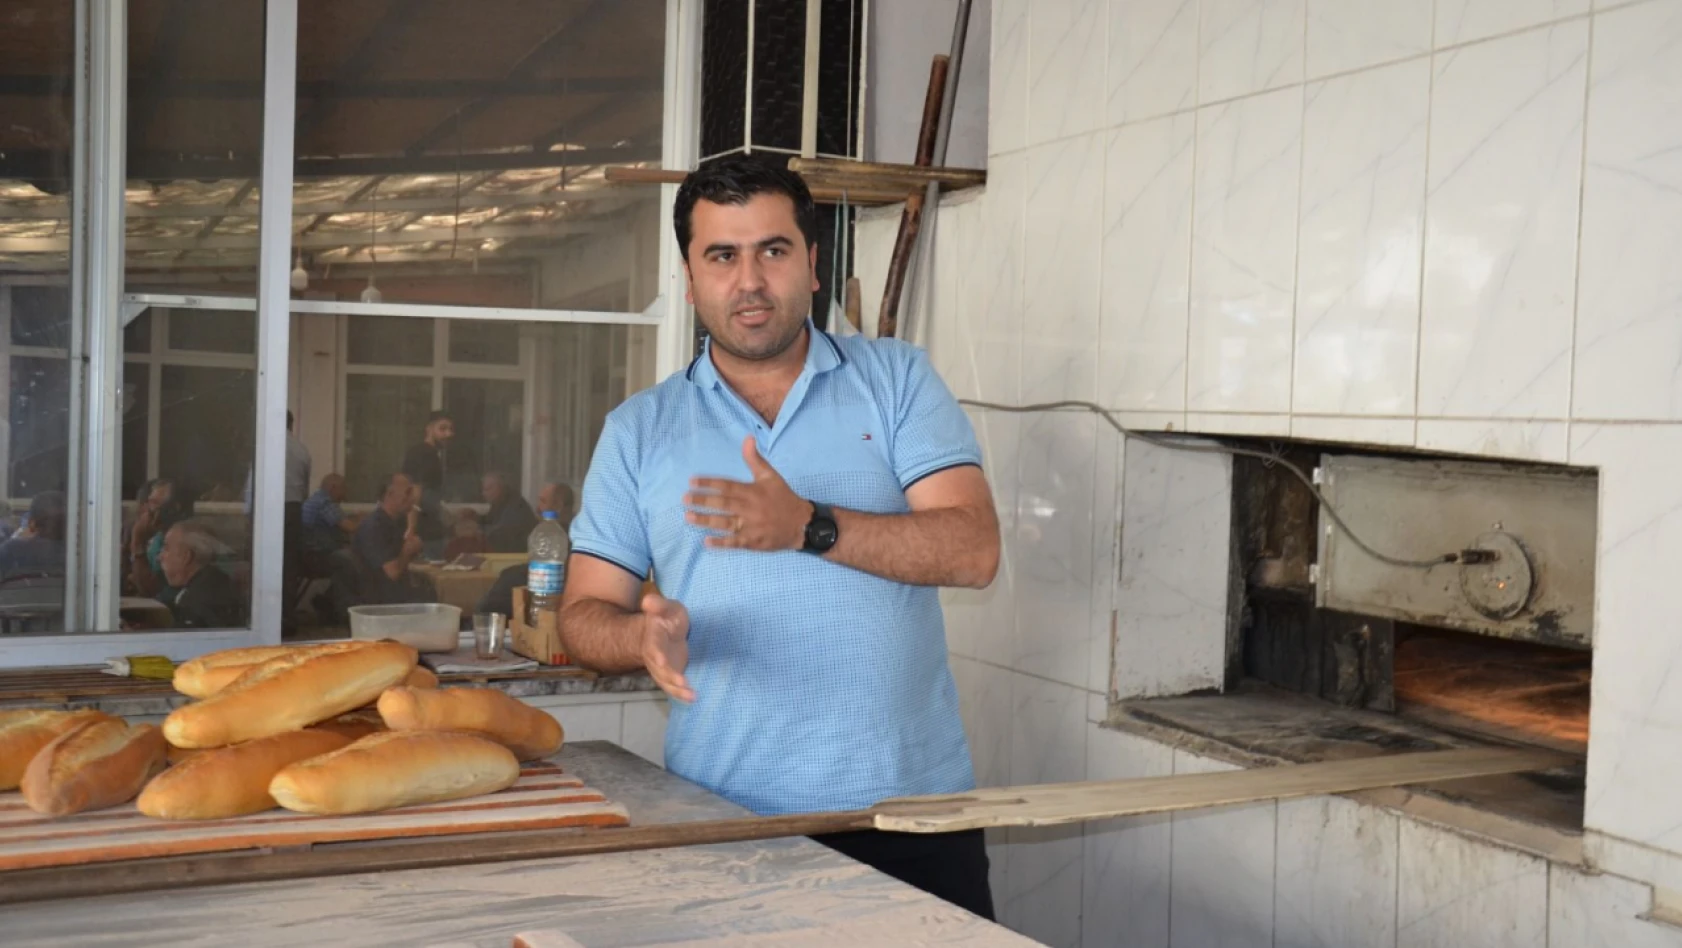 Pertek Belediyesi'nden önemli hizmet: Ekmek 3 TL